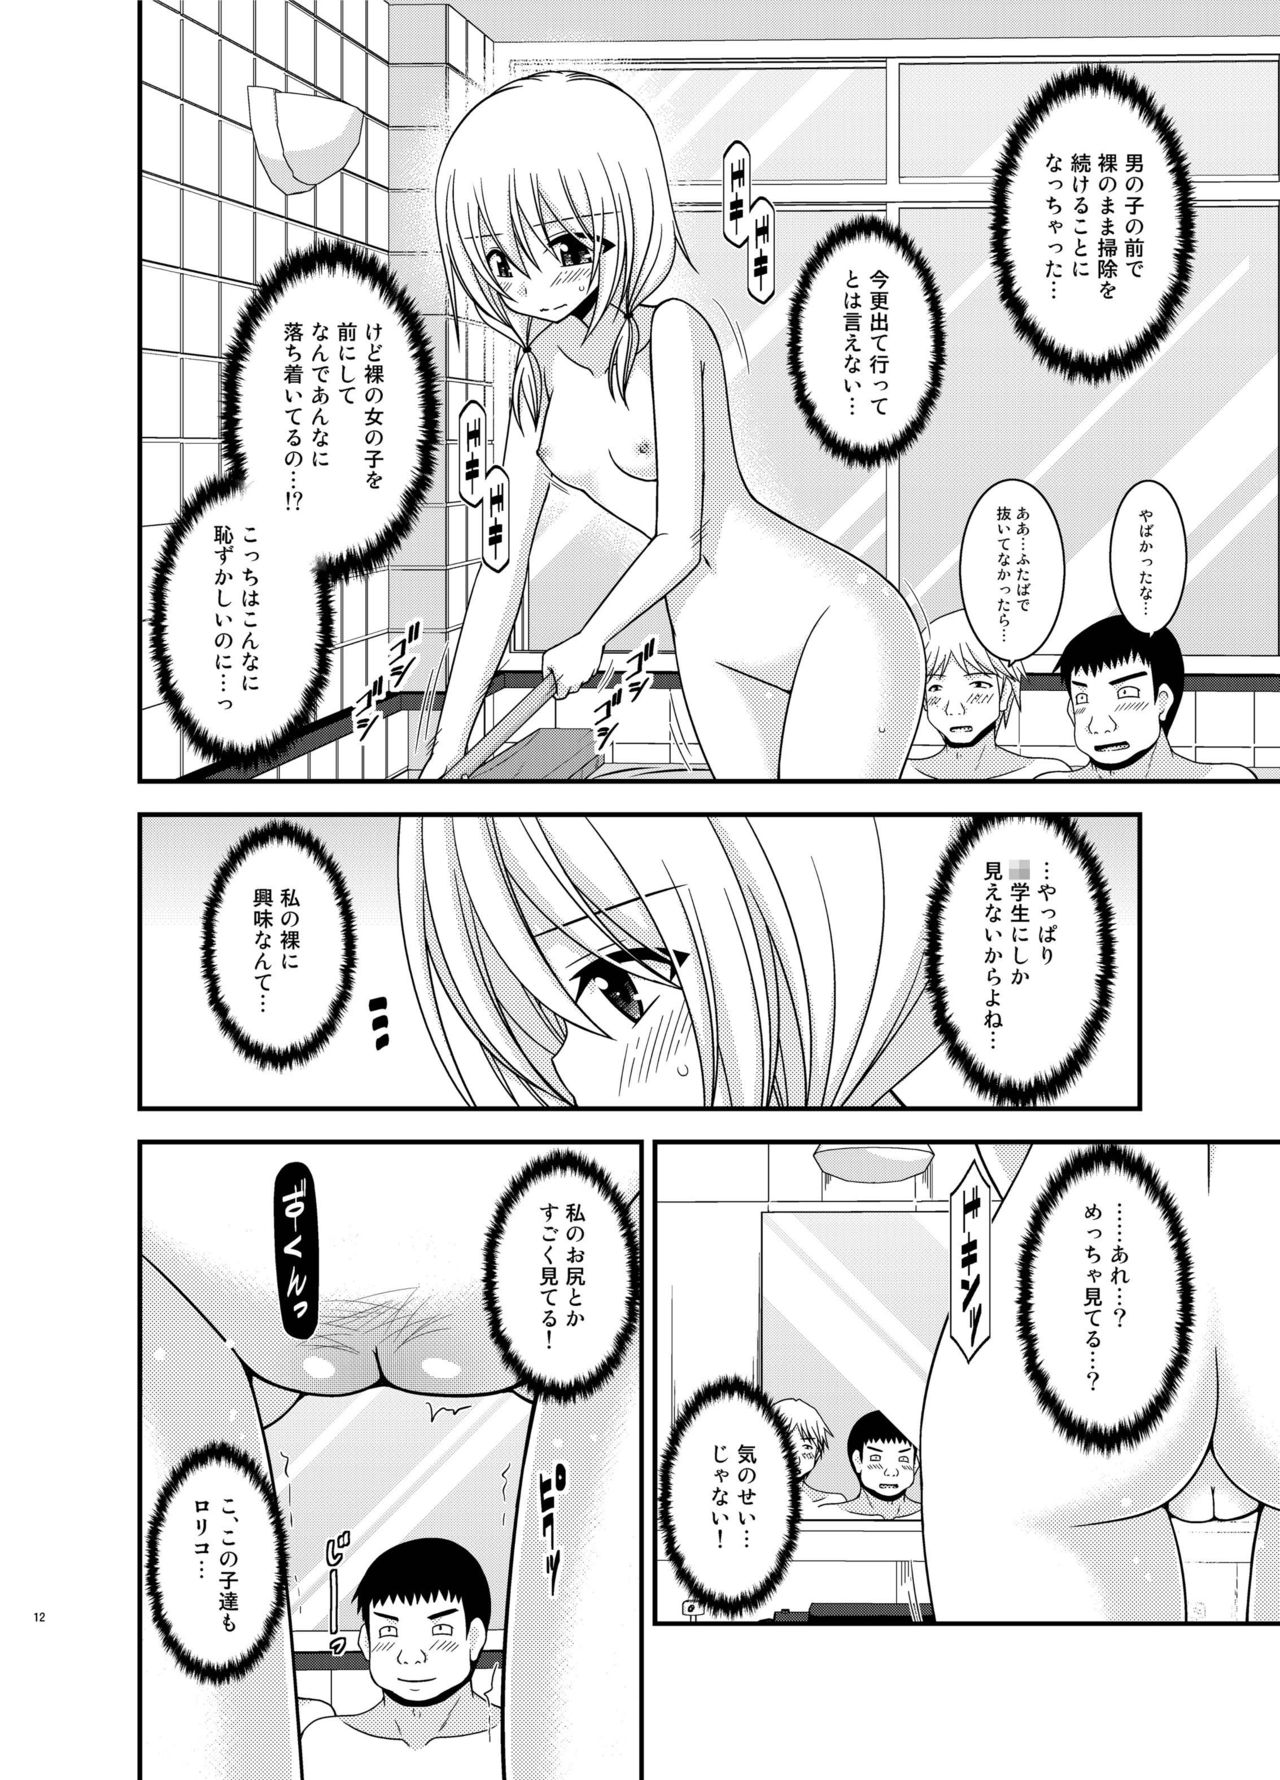 [valssu (Charu)] Roshutsu Shoujo Nikki 18 Satsume [Digital] page 12 full